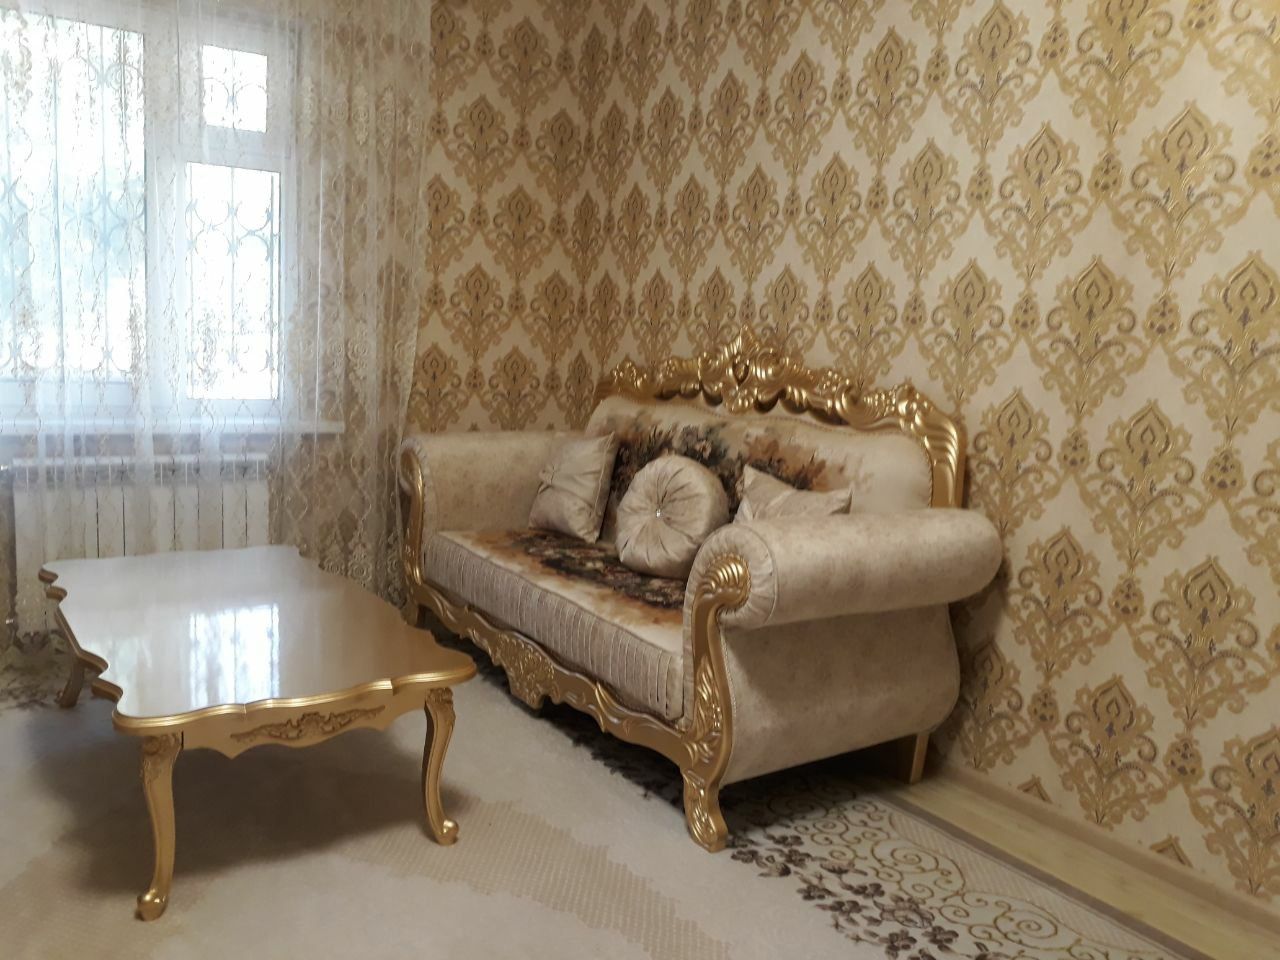 Комплект мягкой мебели Кавказ.Можно также сделать из сусального золота